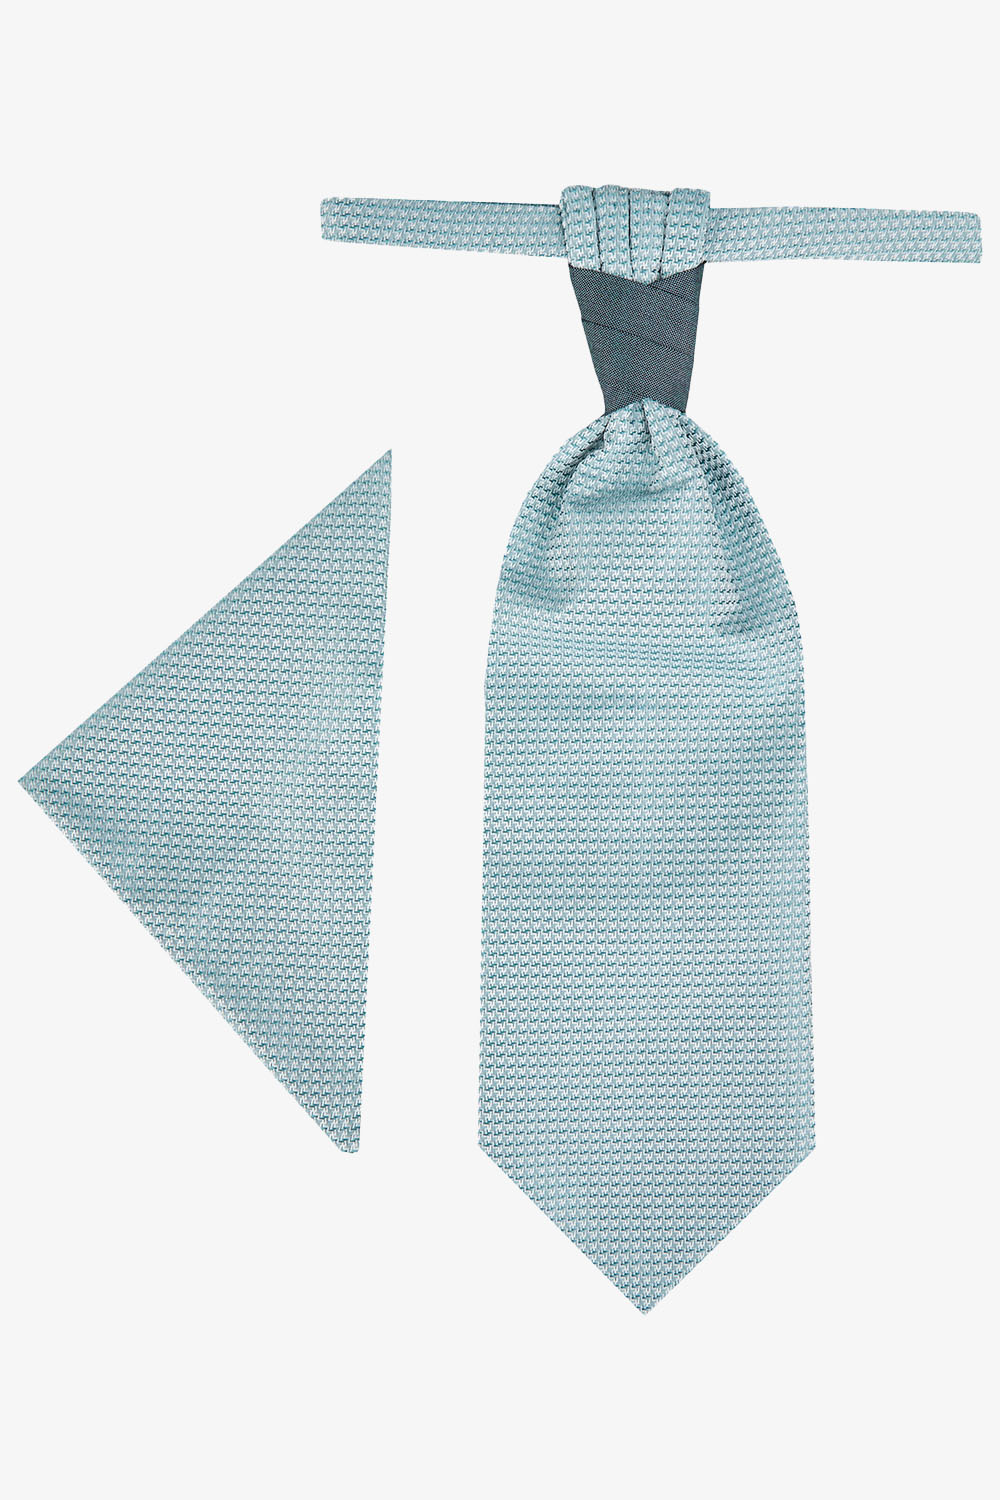 WILVORST középzöld francia nyakkendő szett 421206-40